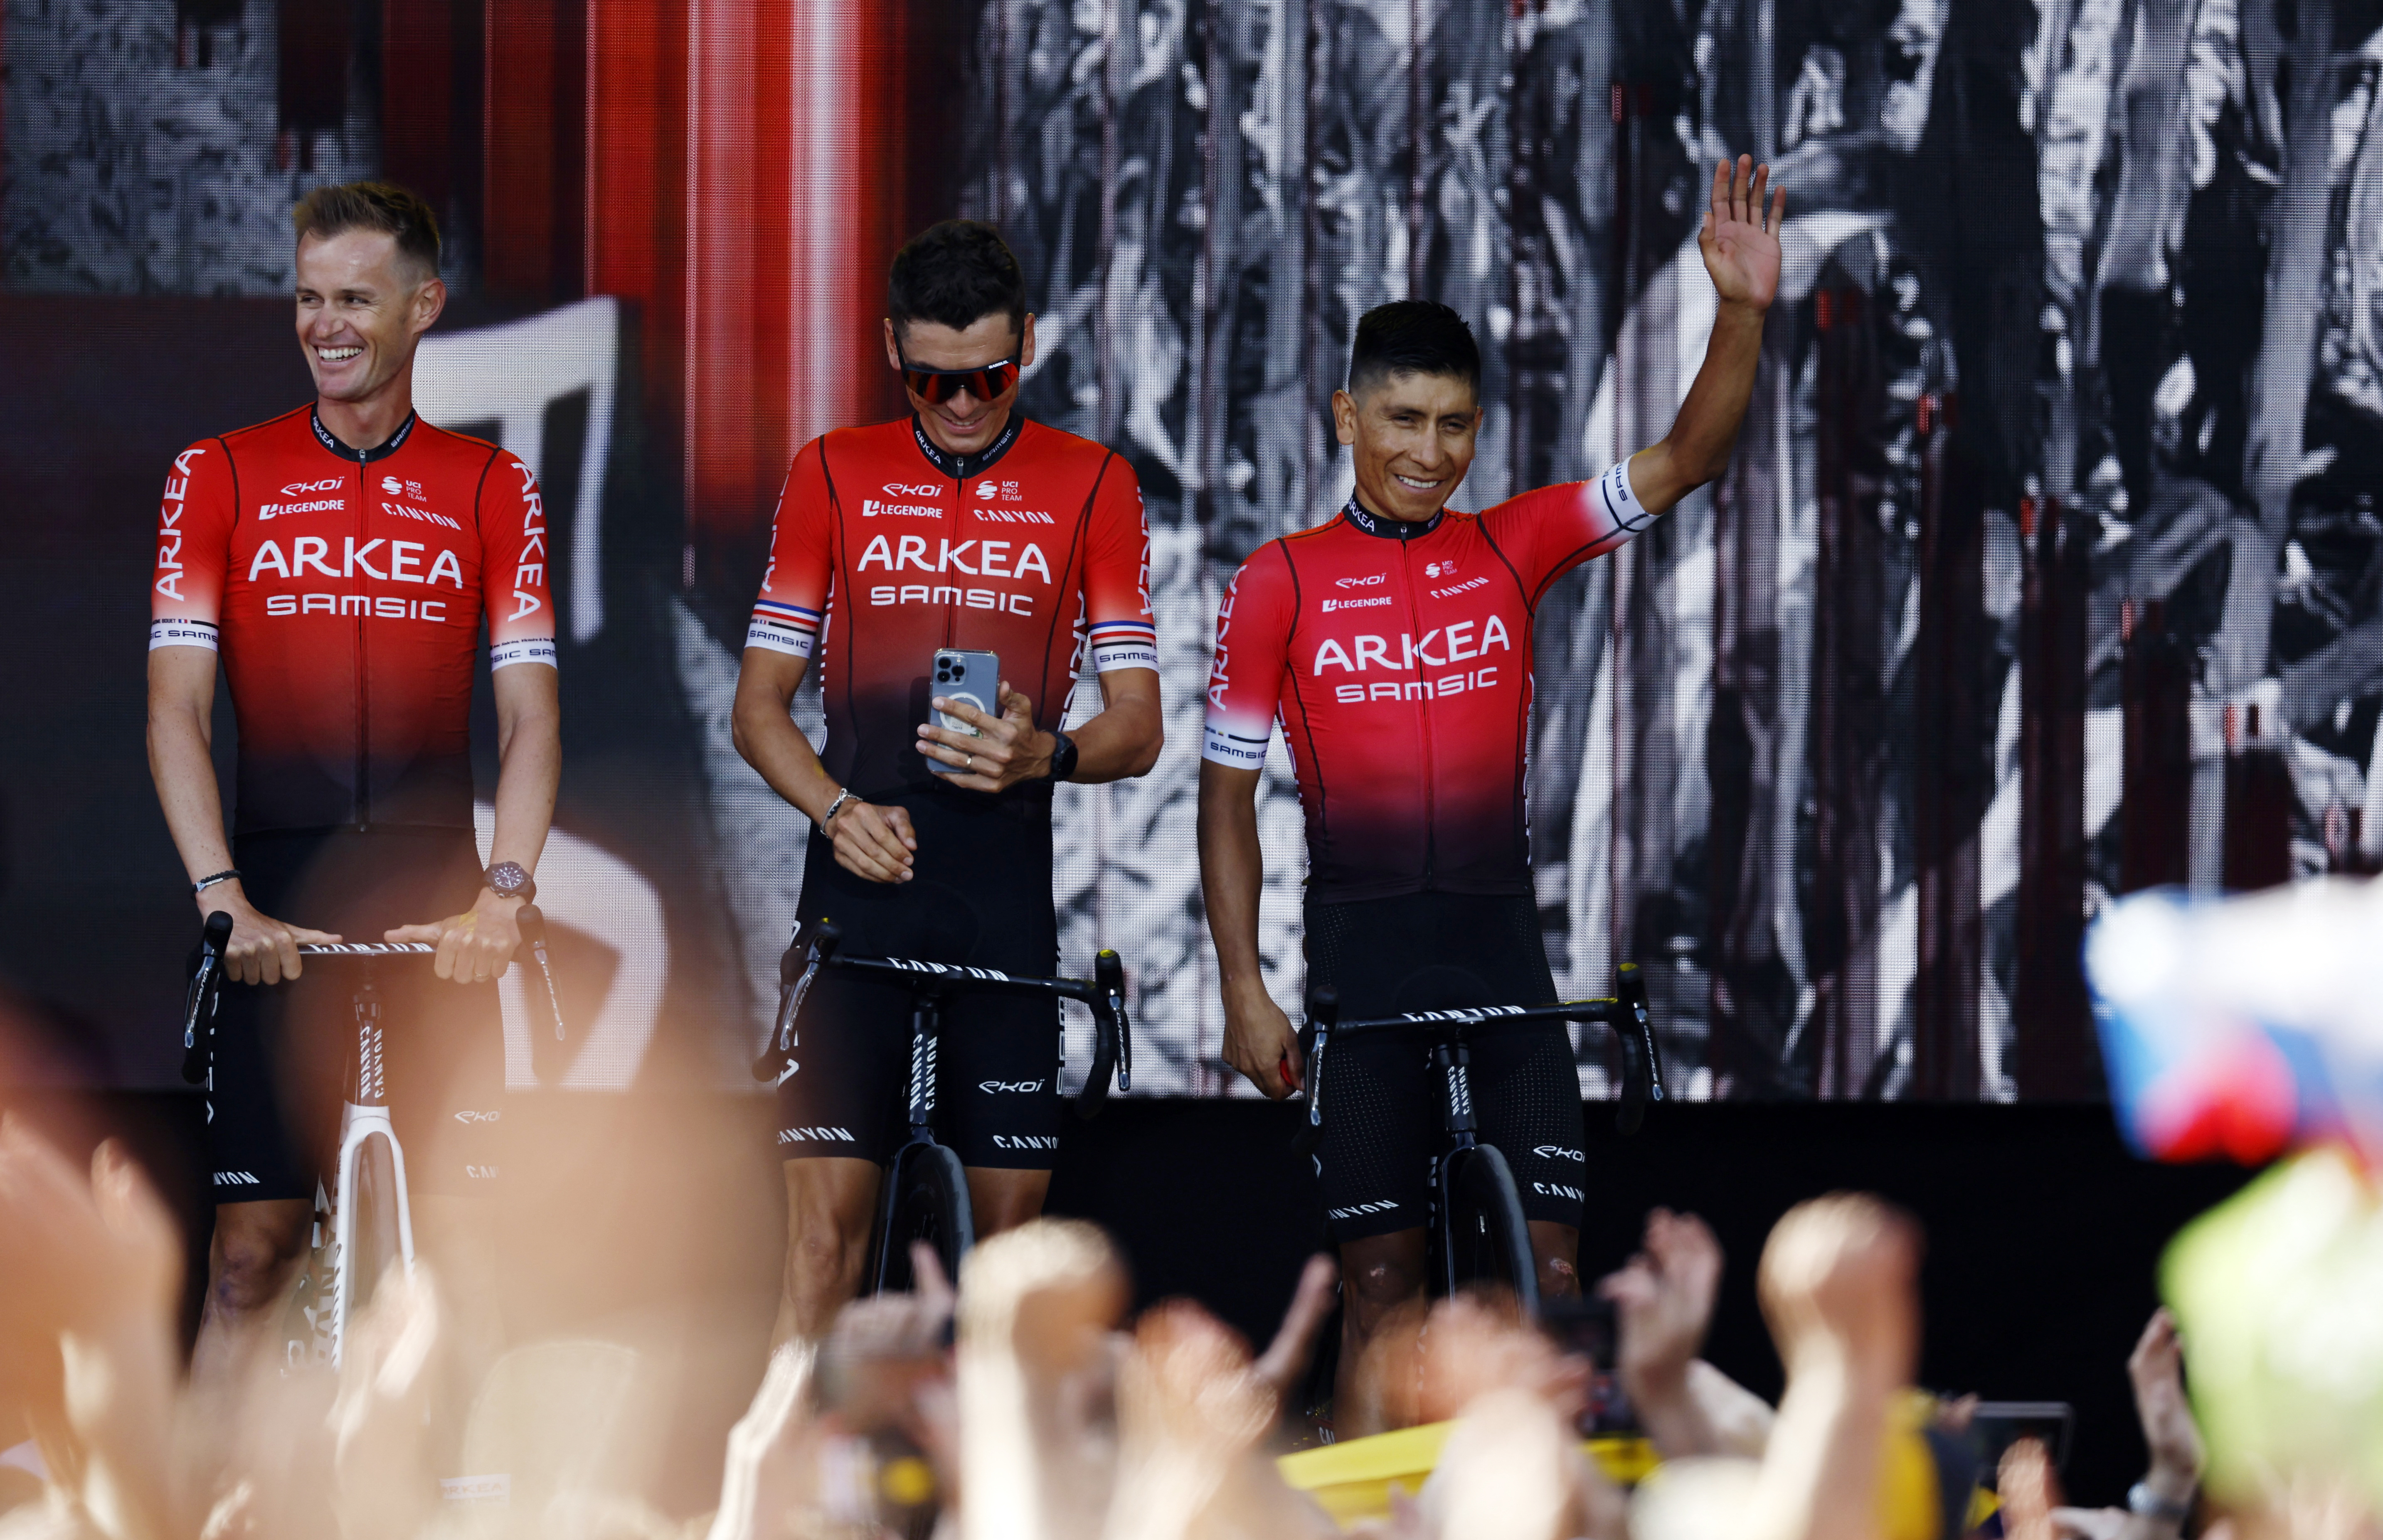 Nairo Quintana en la presentación de equipos para el Tour de Francia 

REUTERS/Gonzalo Fuentes